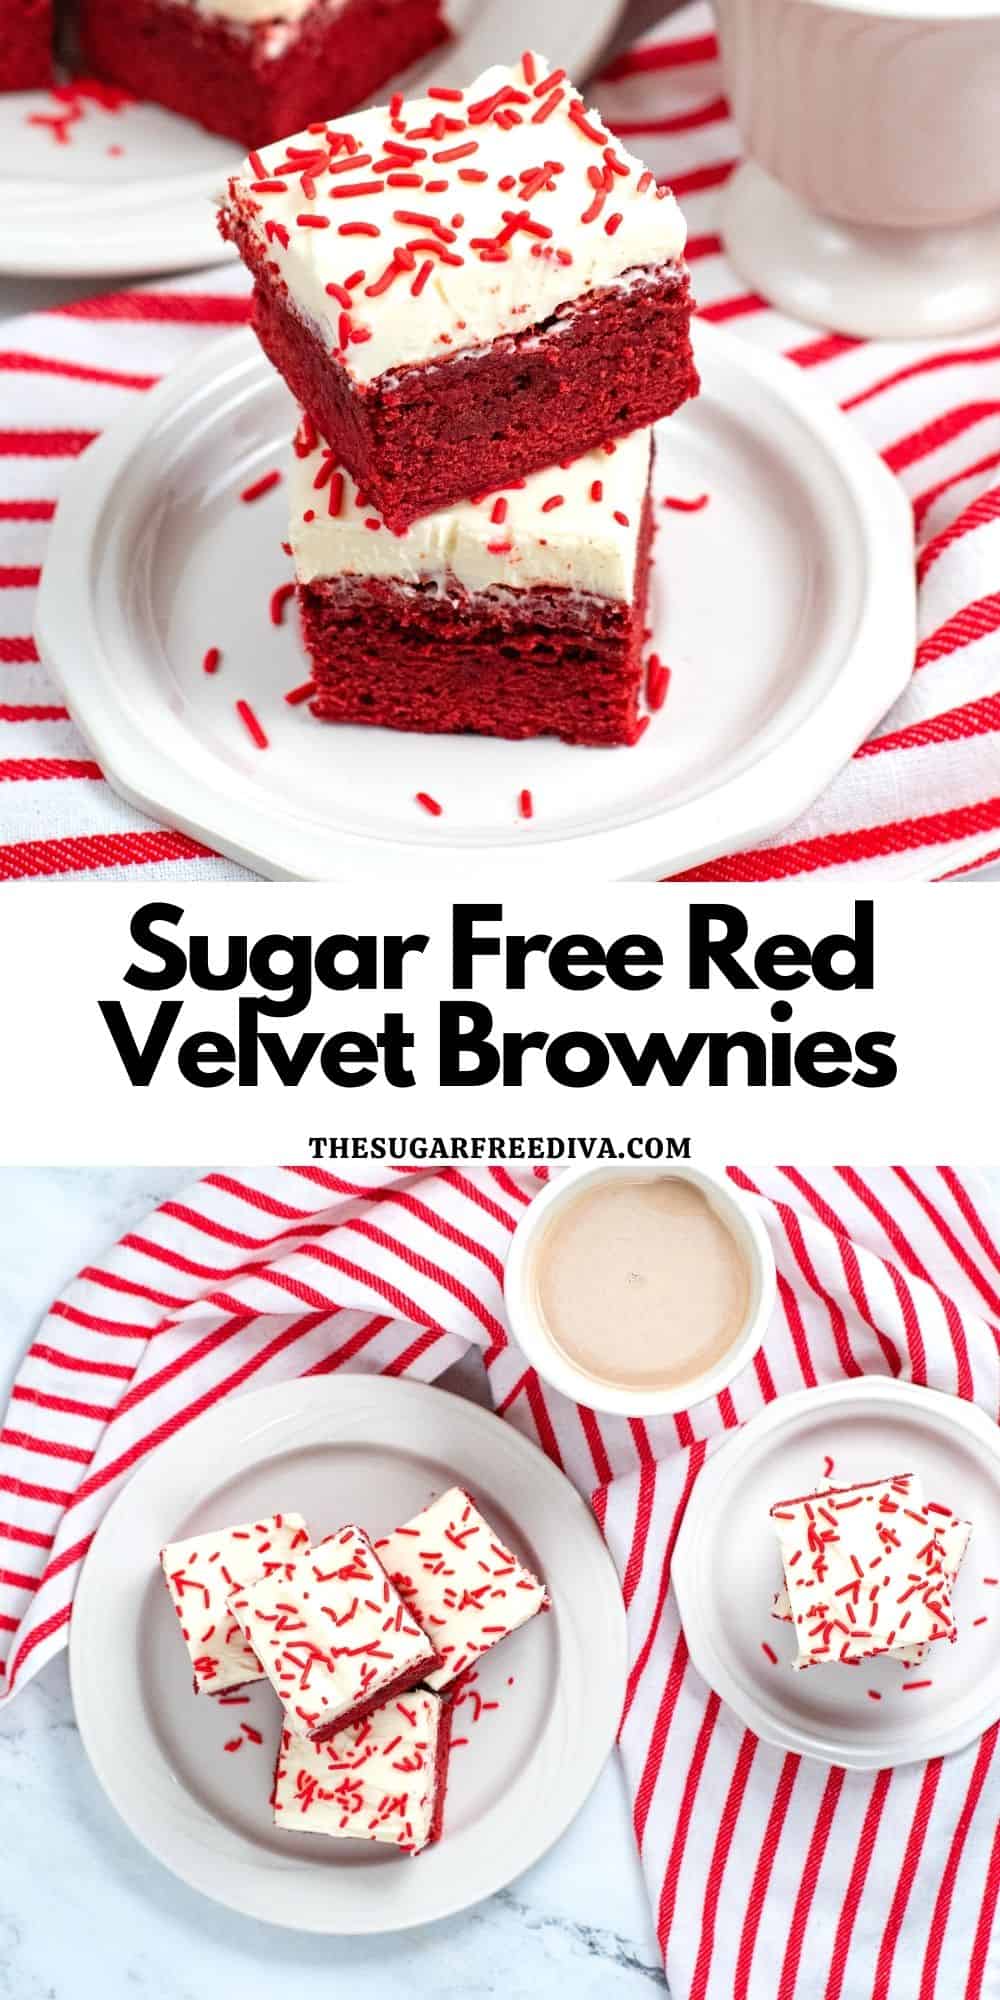 Sugar Free Red Velvet Brownies